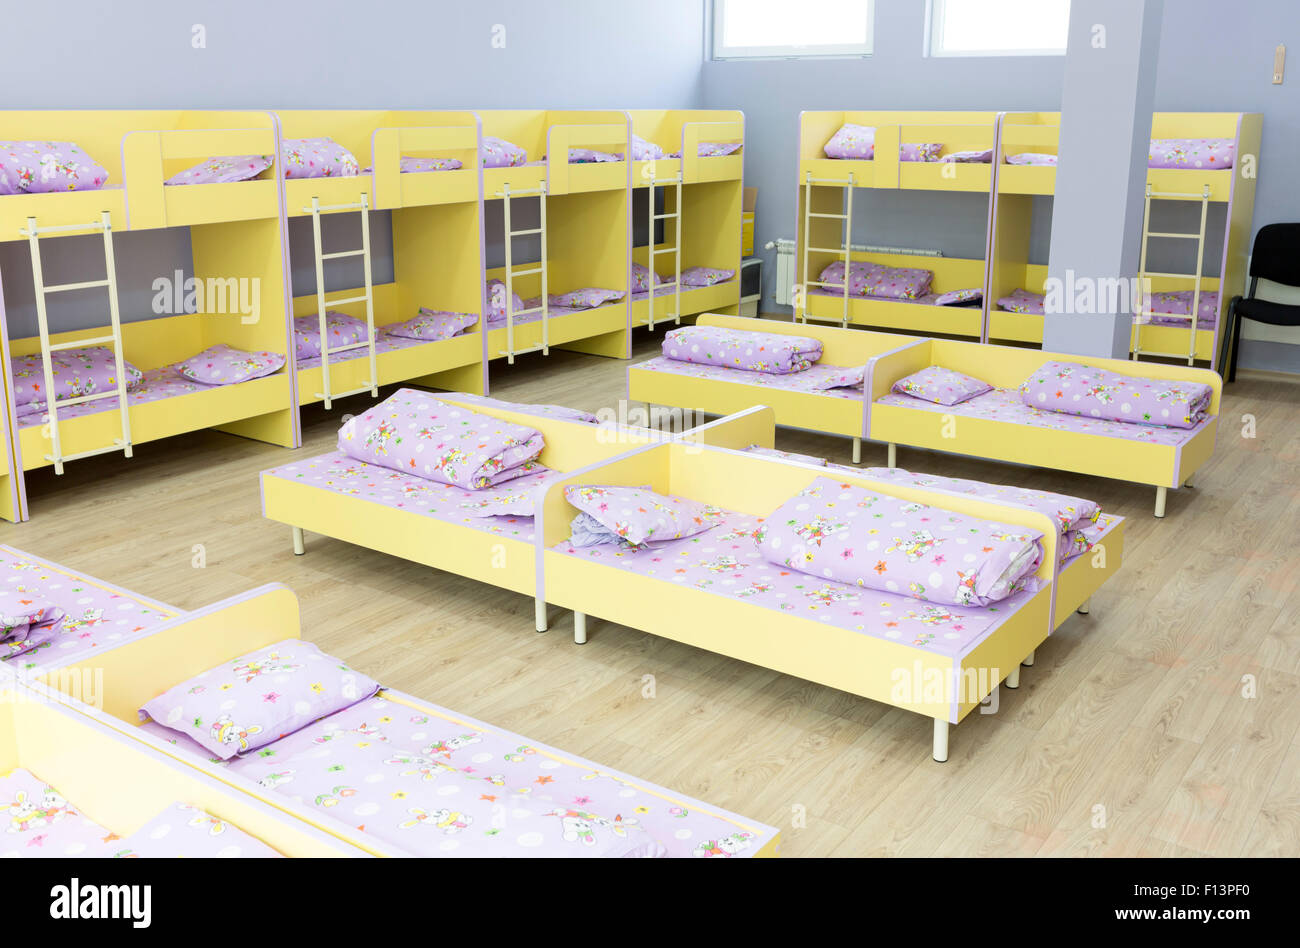 La maternelle moderne chambre avec lits superposés avec des petits  escaliers pour les enfants Photo Stock - Alamy